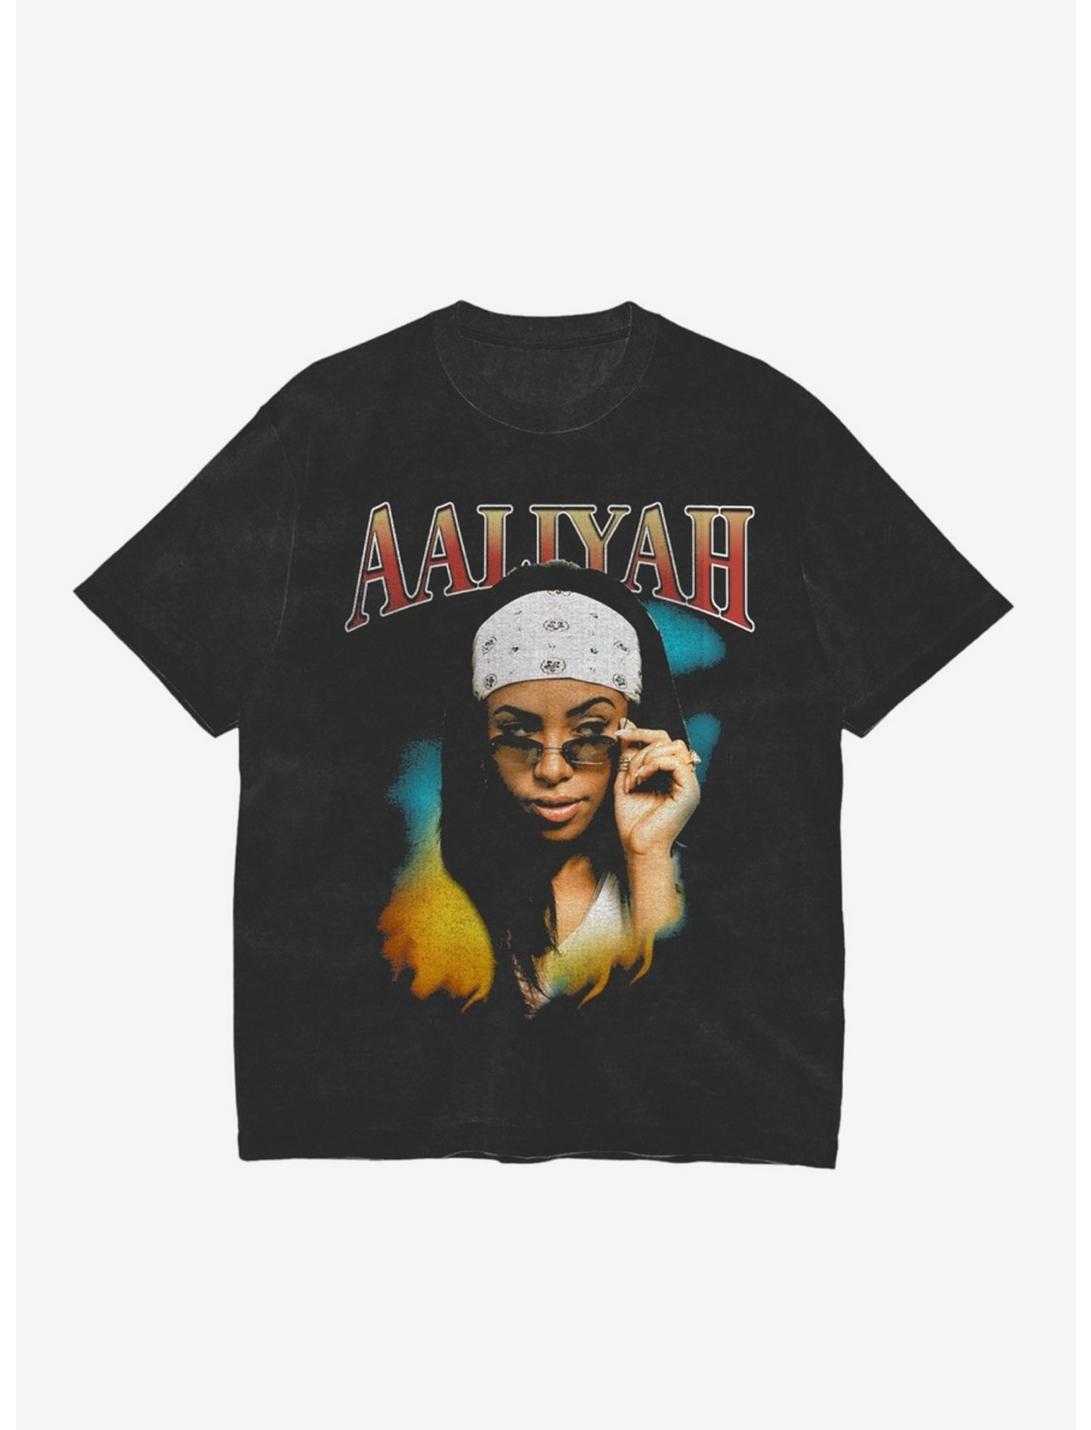 Aaliyah Side-Eye Girls T-Shirt, BLACK, hi-res